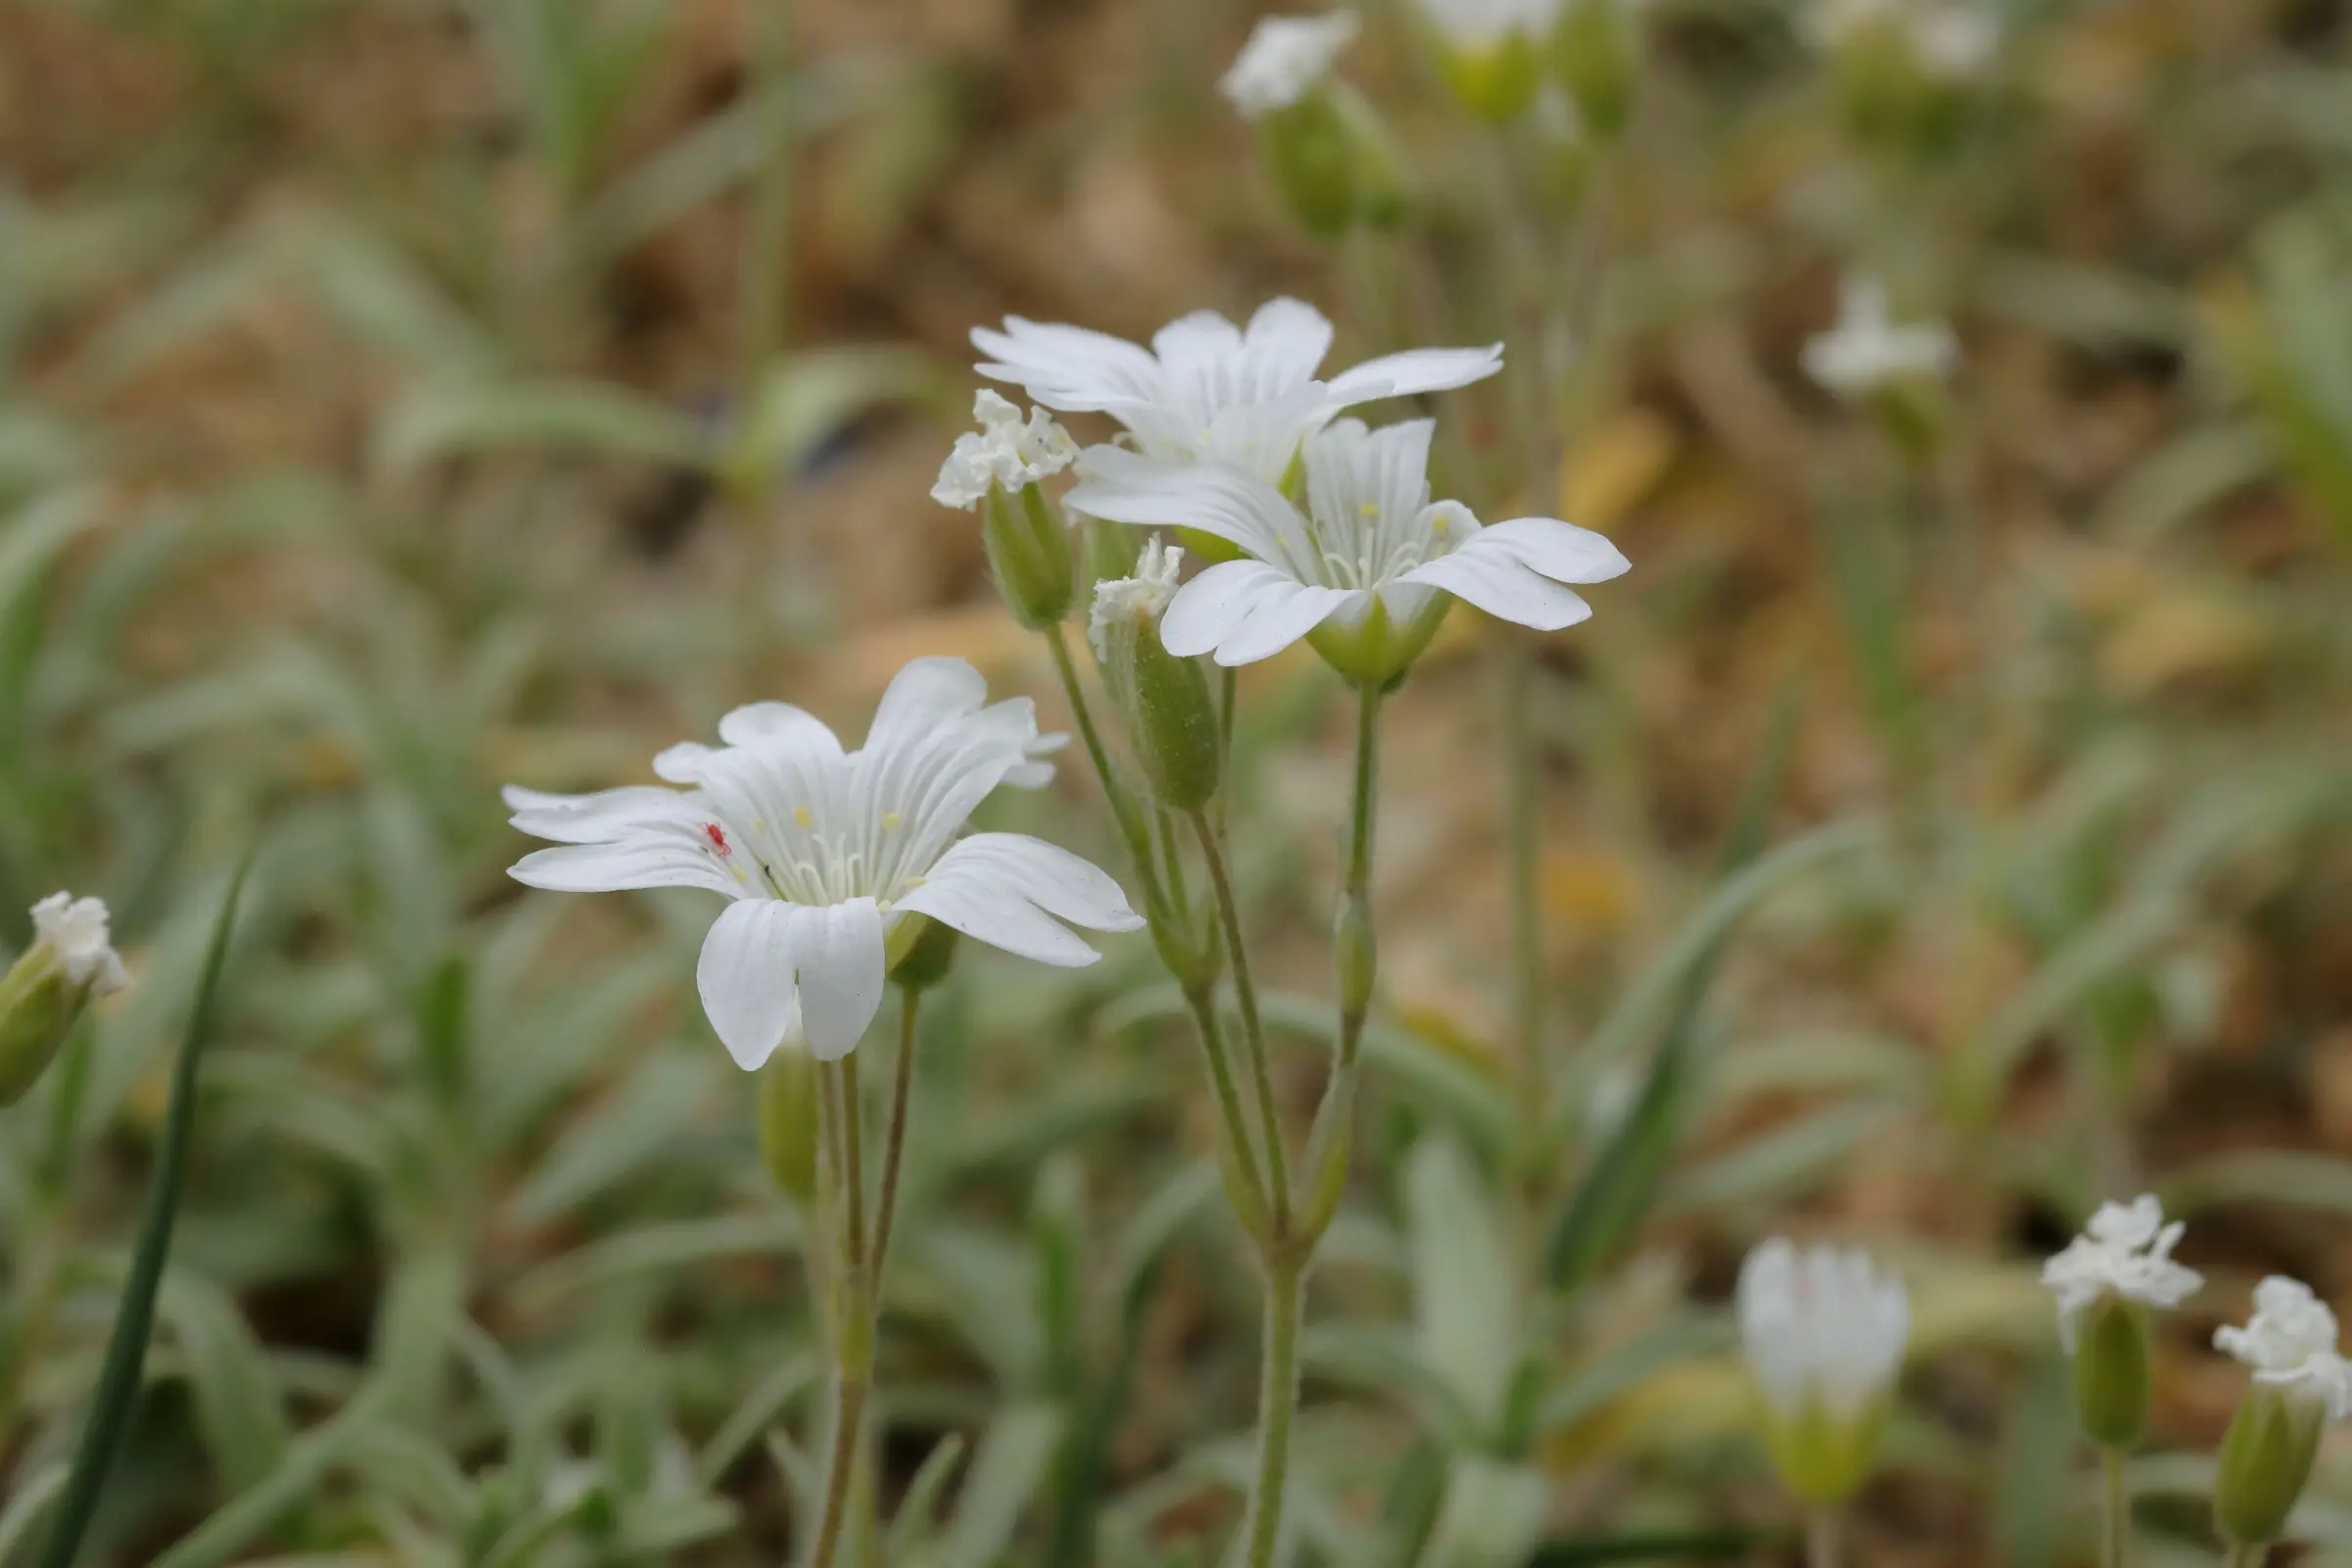 Acker-Hornkraut - Blütenstand im Detail, die weißen Blütenköpfe bestehen aus eingeschnittenen Blütenblättern.